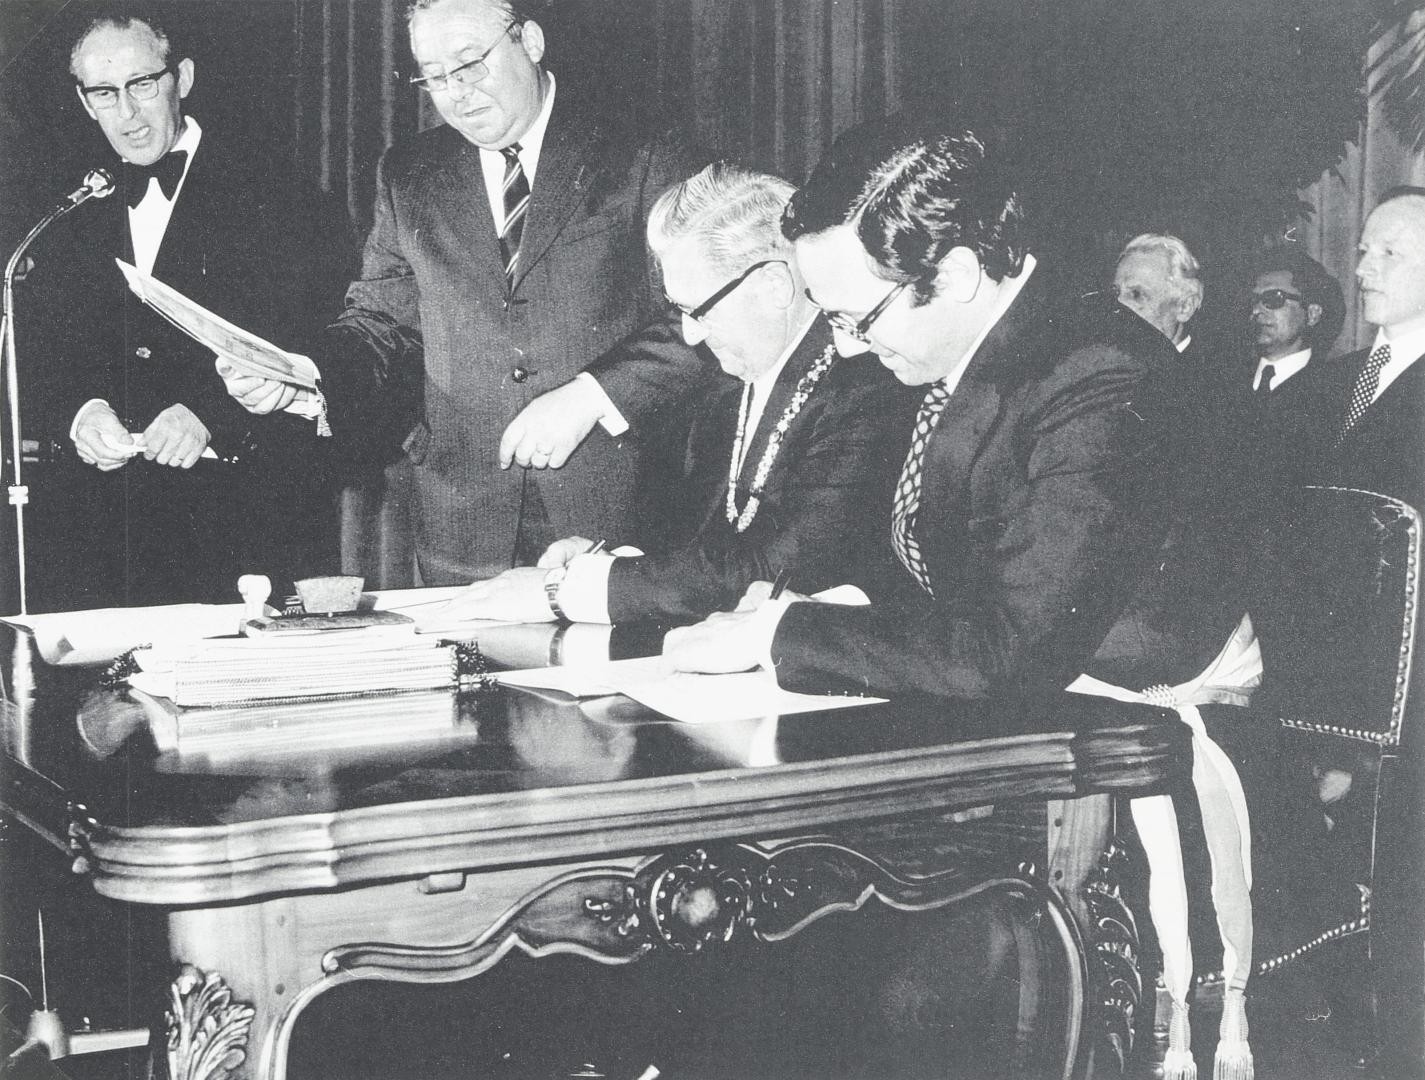 Hugo Rimmelspacher und Bernard Stasi bei der Unterzeichnung der Partnerschaftsurkunde 1973